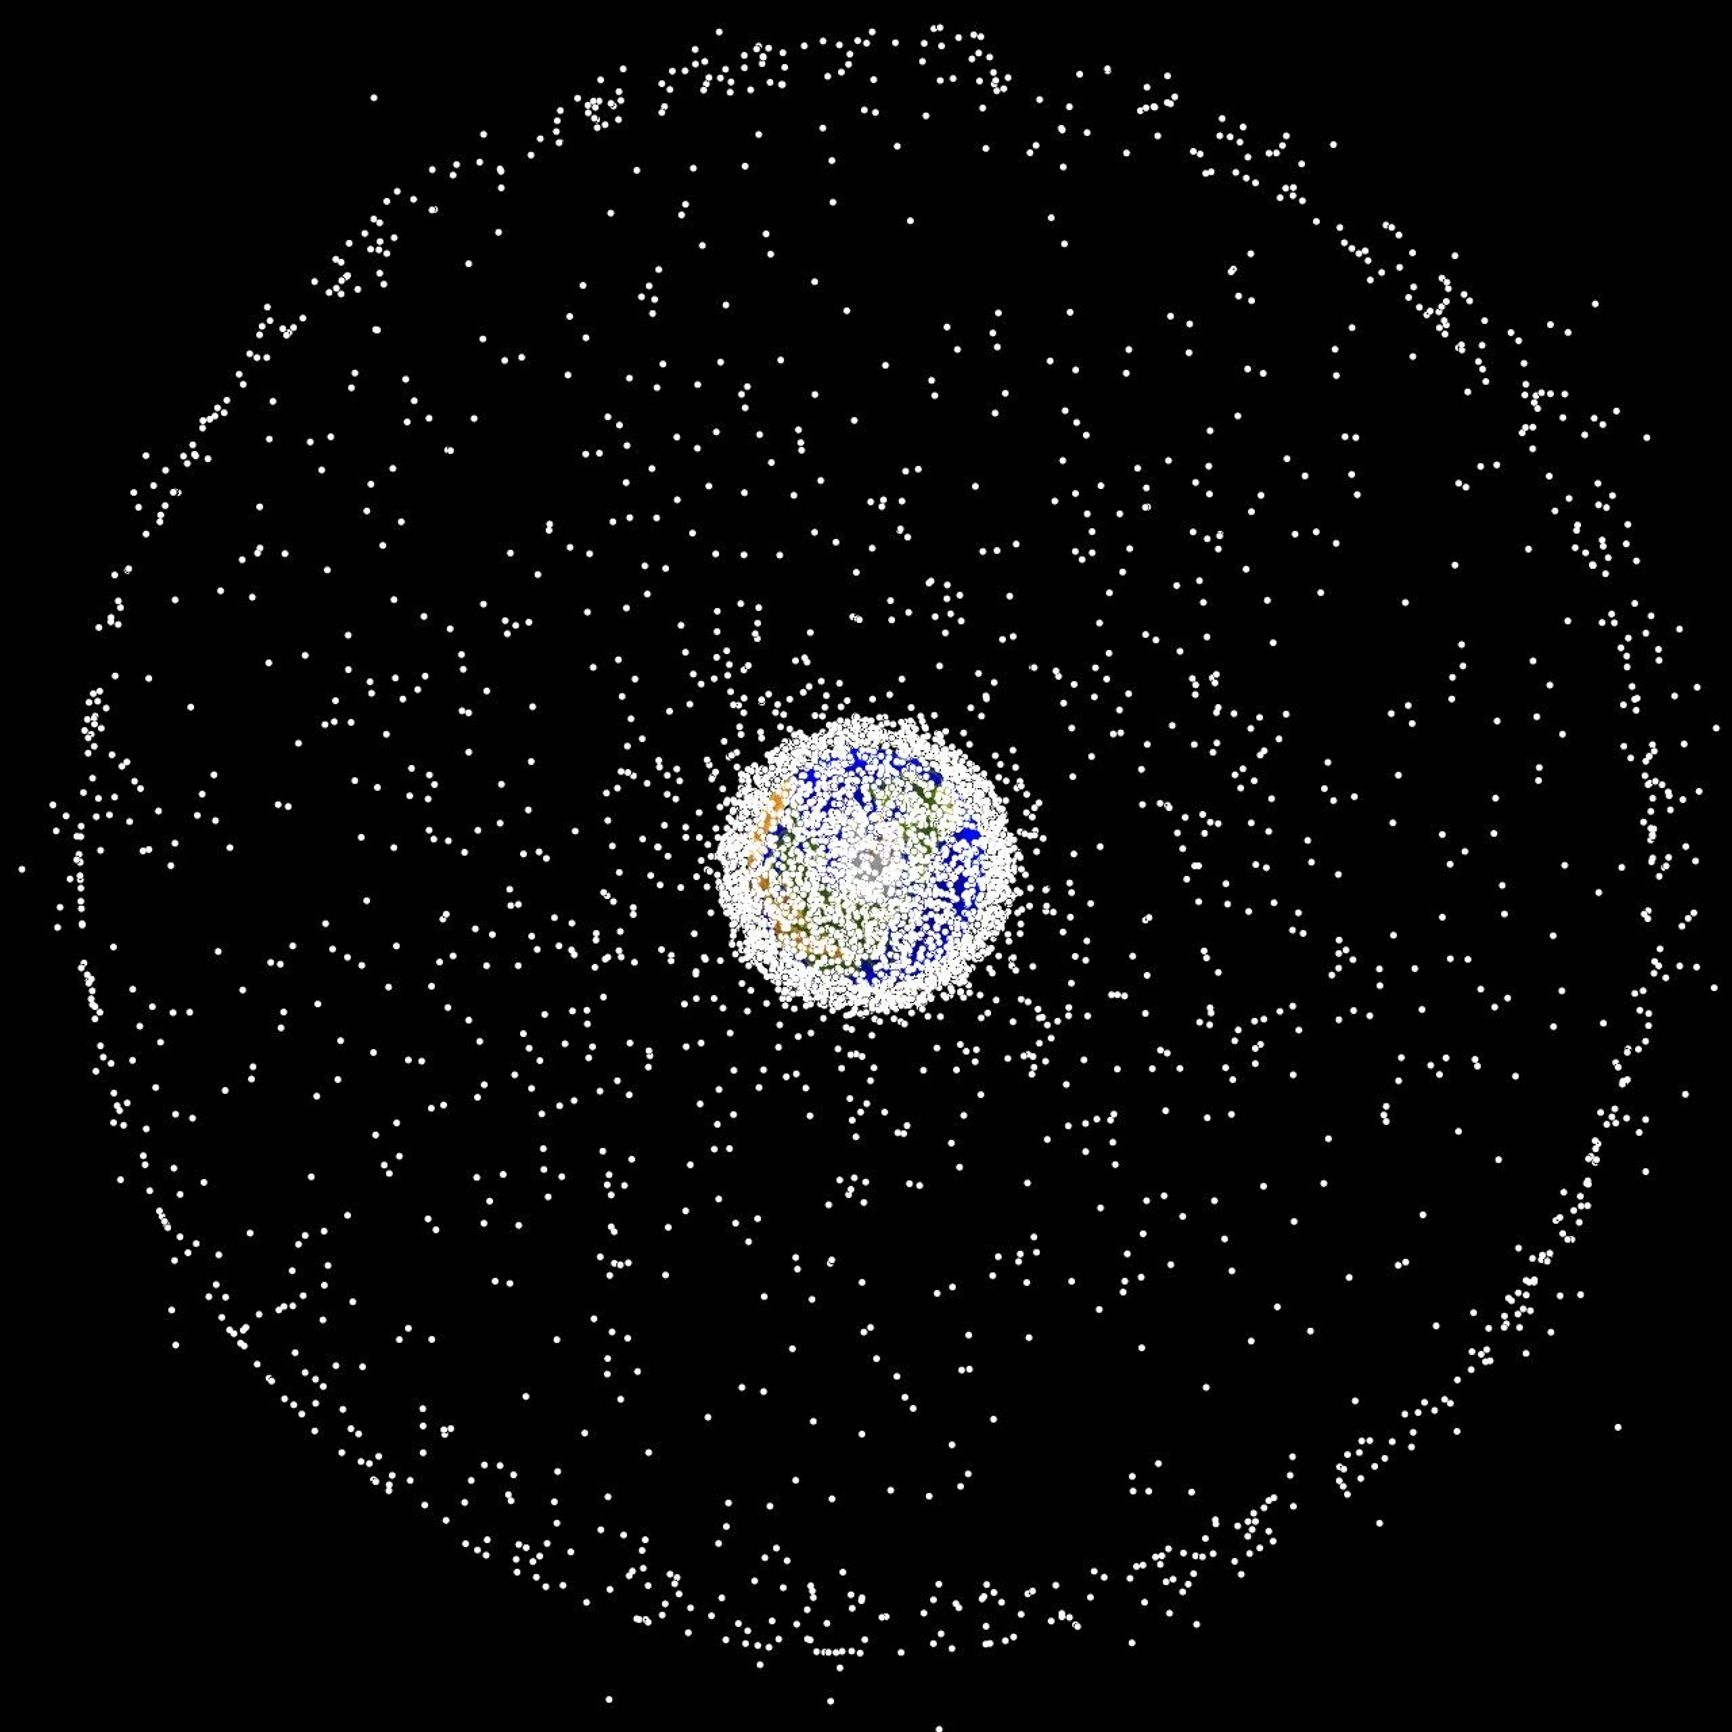 Облако объектов в центре — это объекты на низкой околоземной орбите, кольцо на краю — объекты на геостационарной орбите.